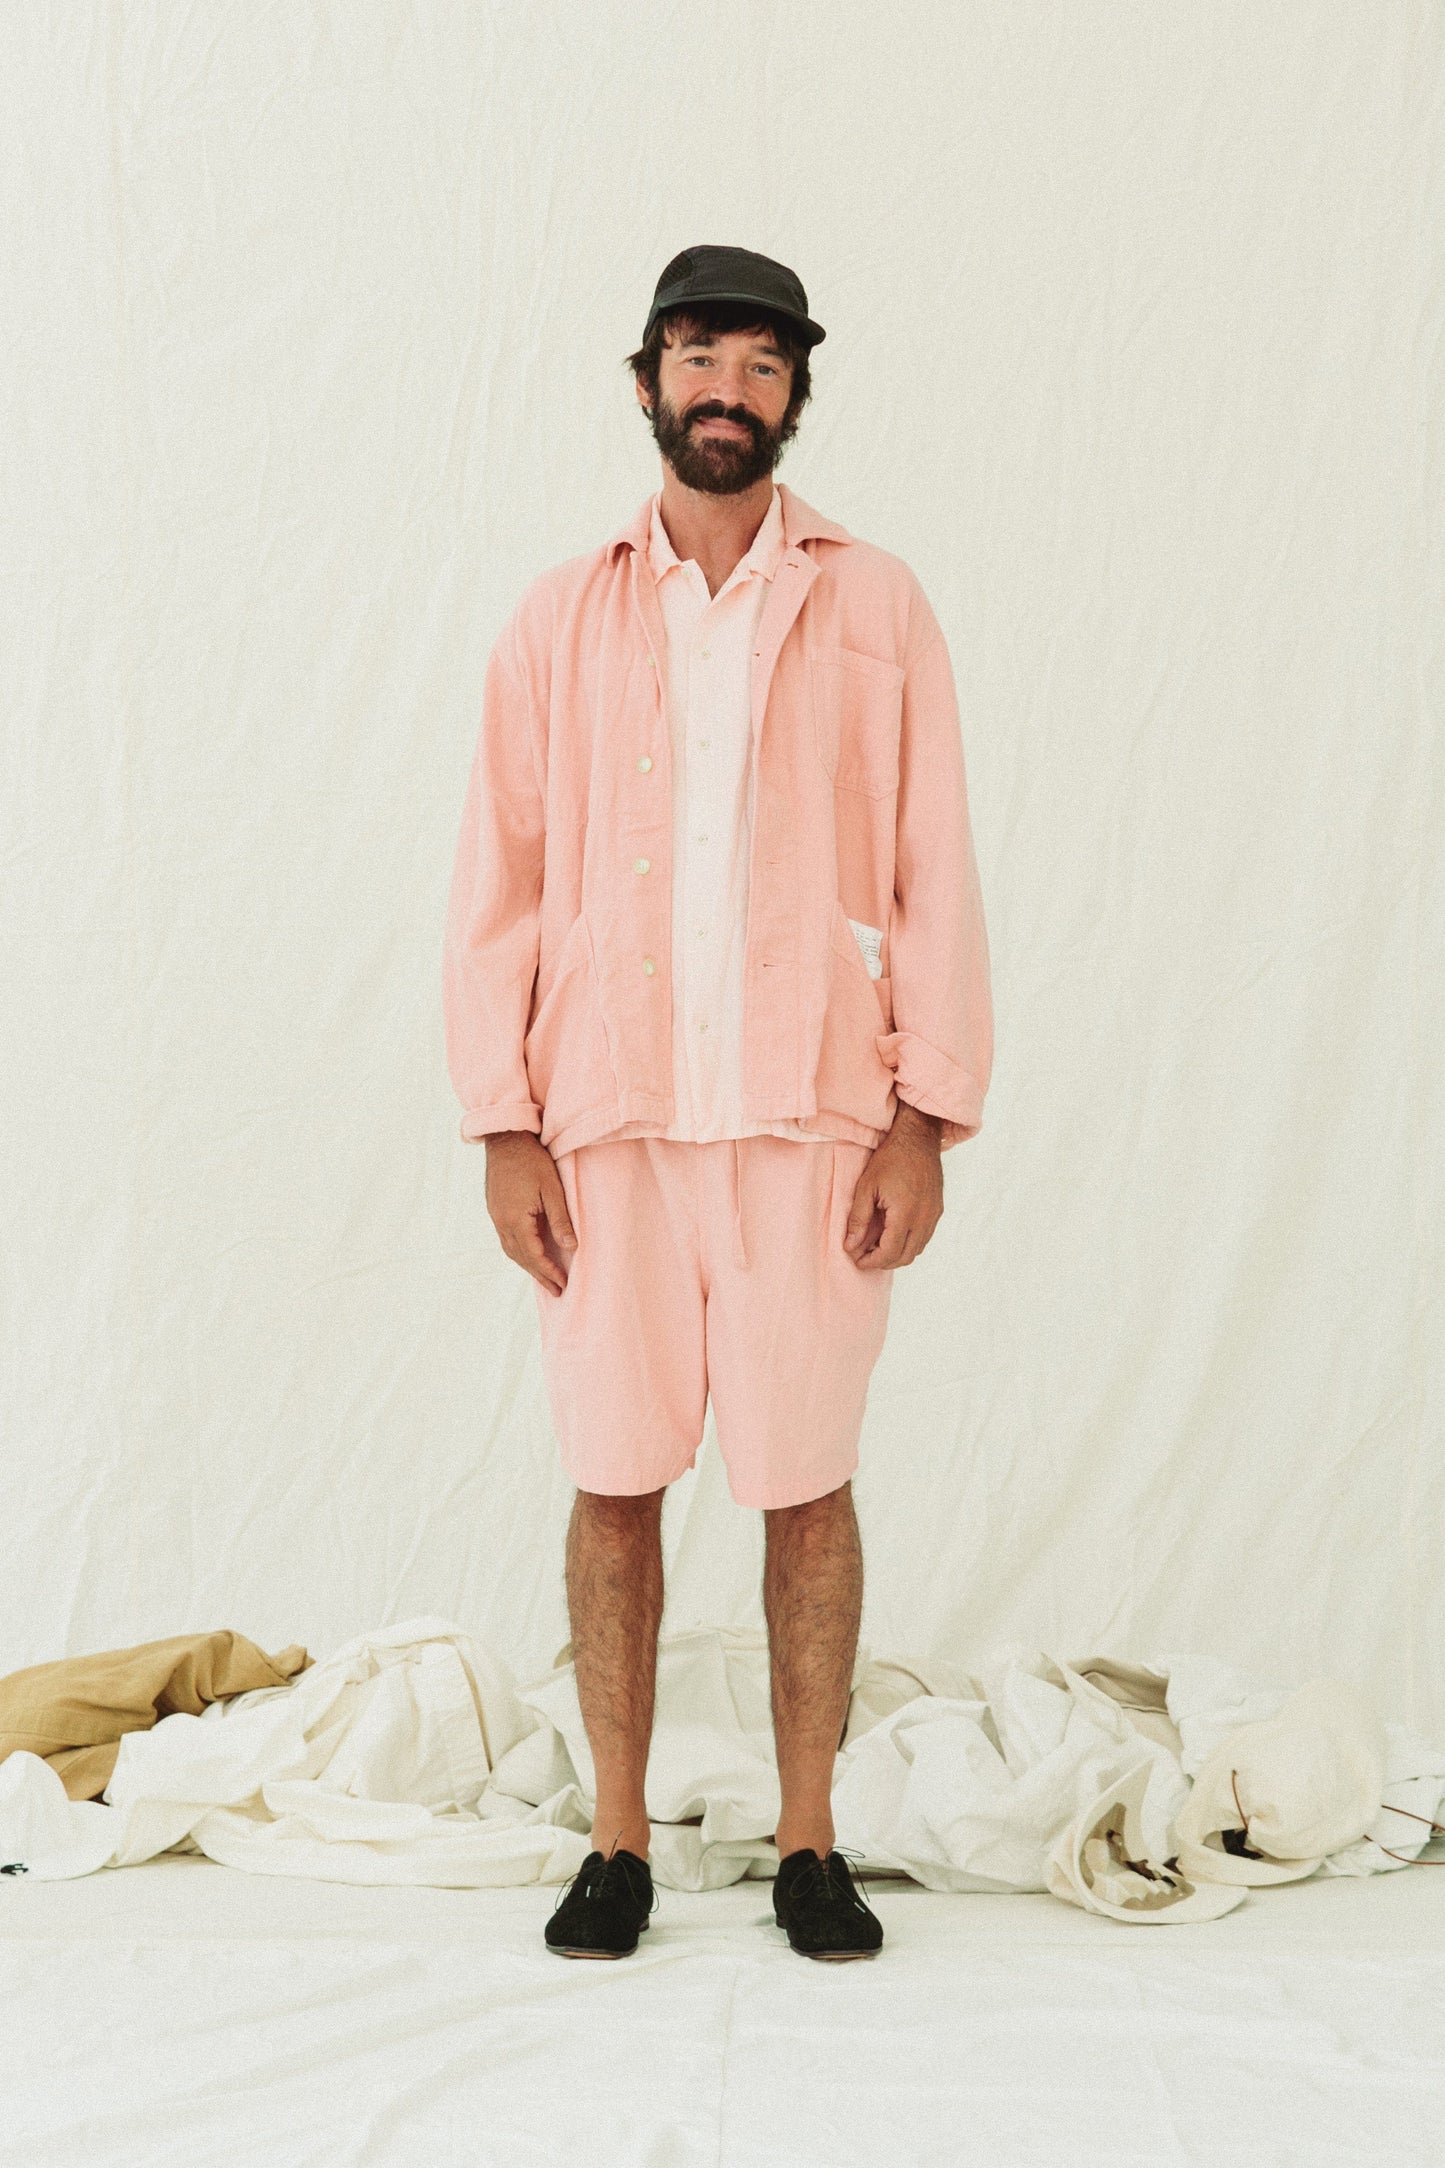 Pajama Shorts / Natural